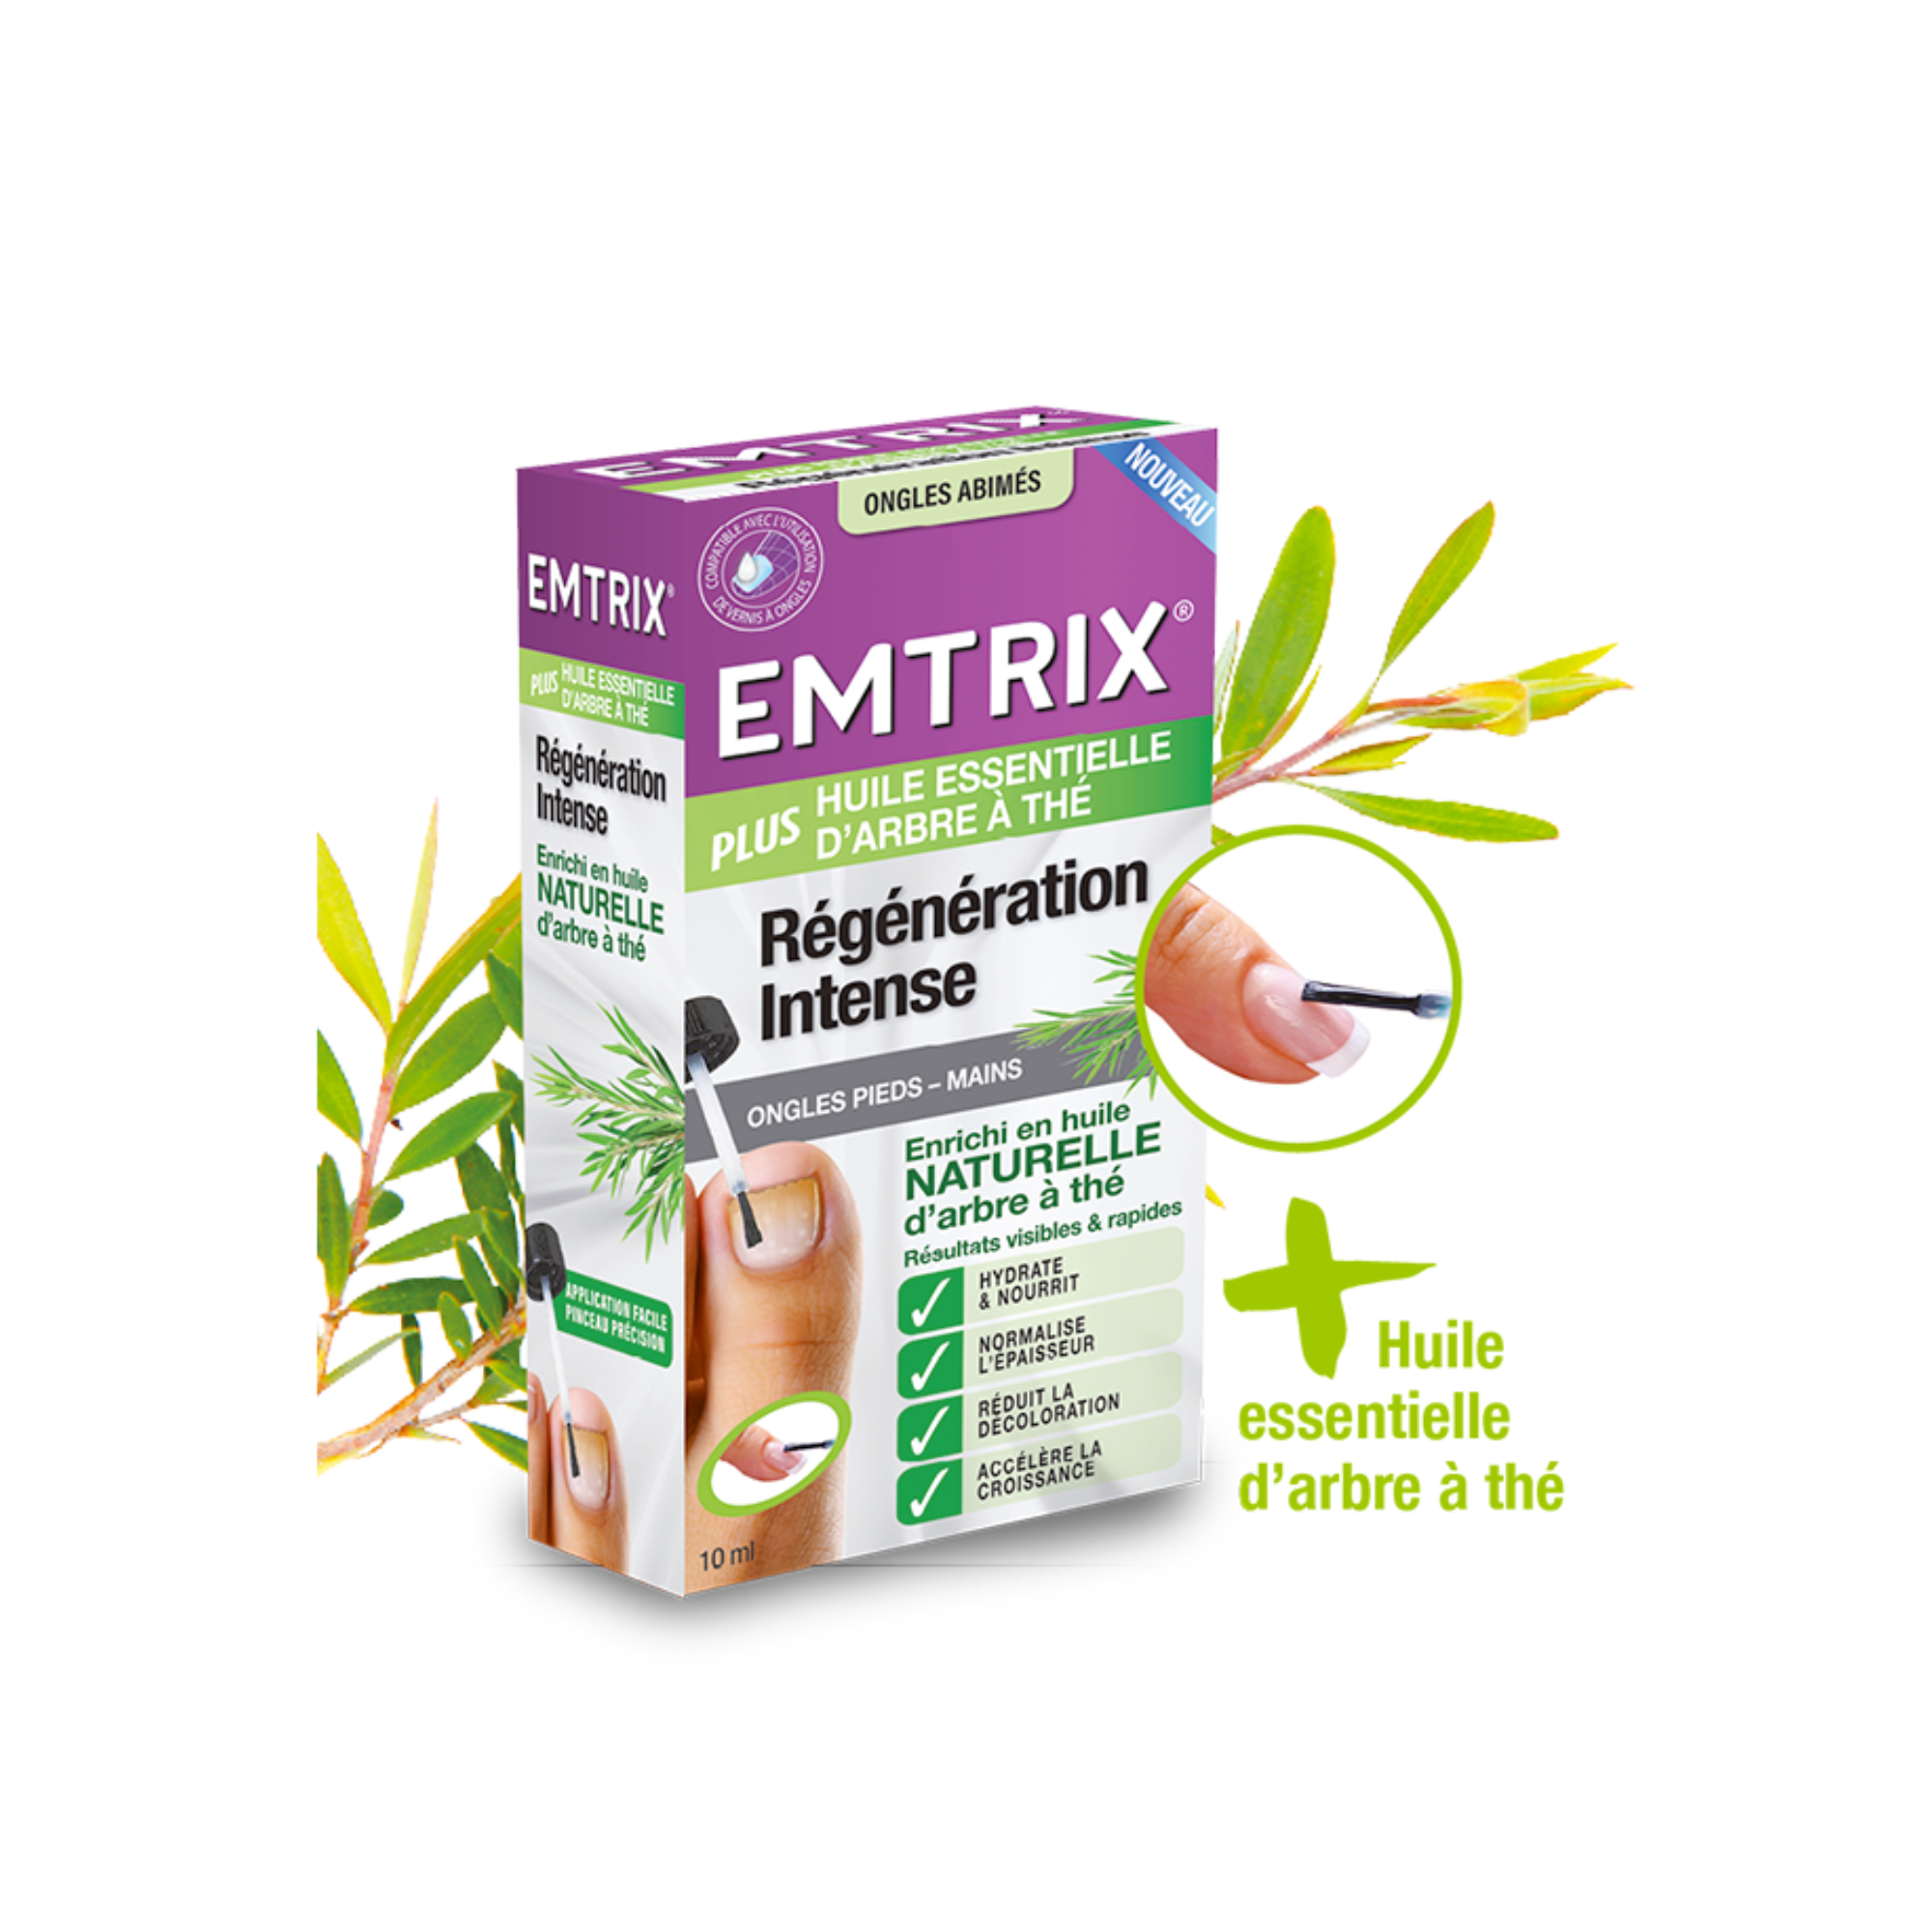 Emtrix - Régénération Intense ongles abîmés - 1 flacon de 10 ml